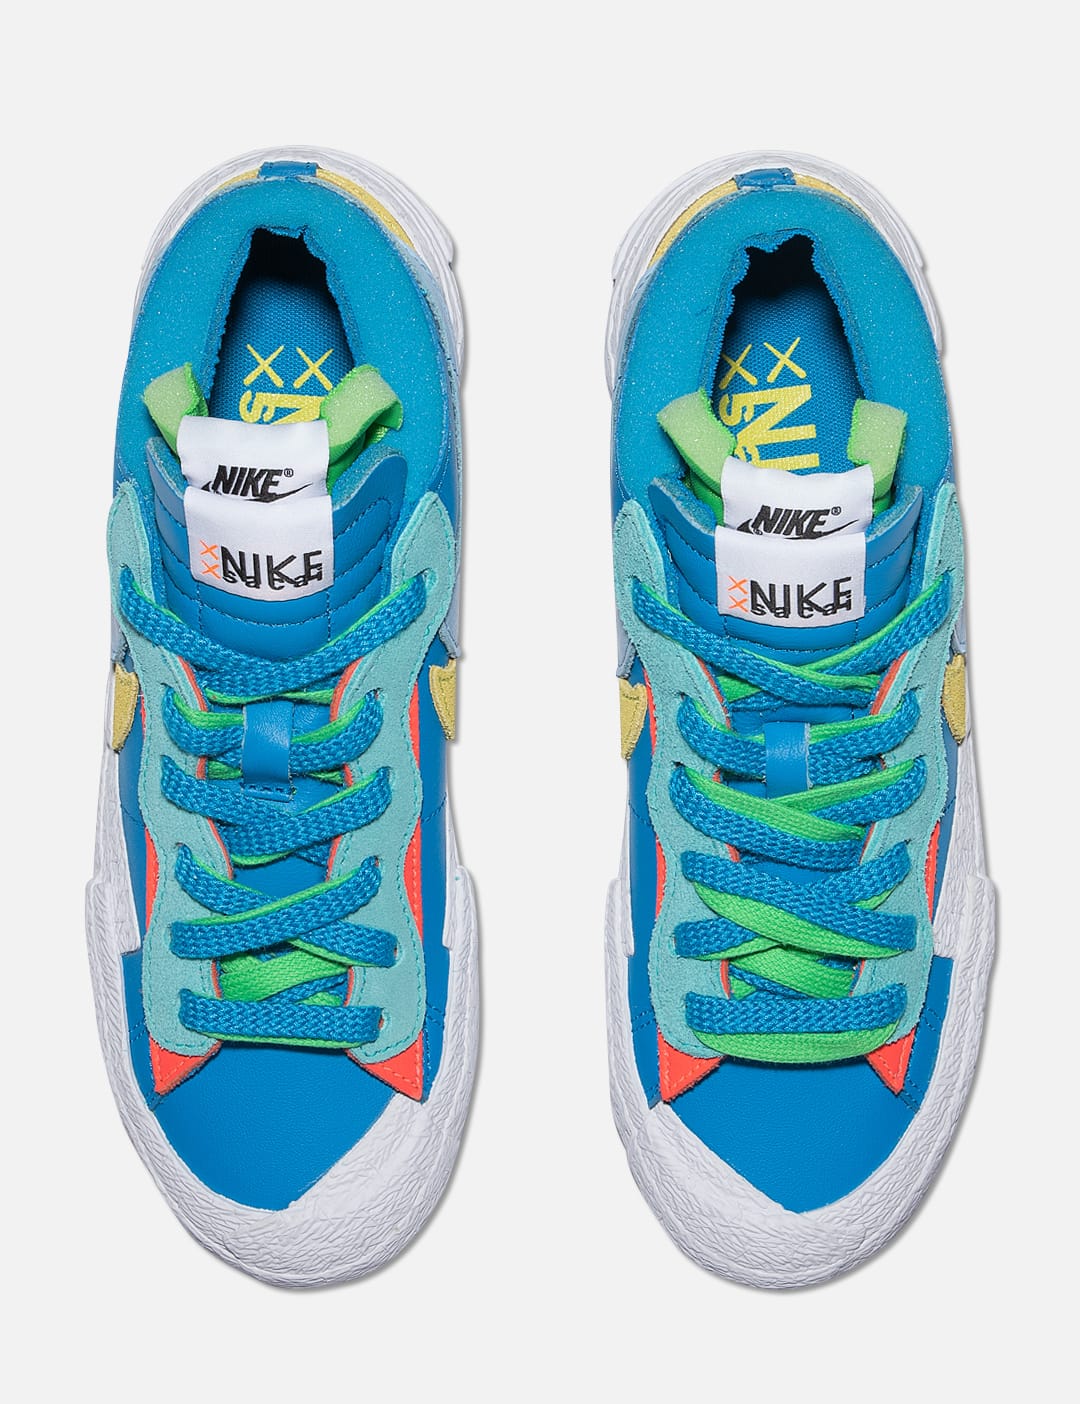 Nike - Nike x Sacai x KAWS Blazer Low | HBX - Globally Curated